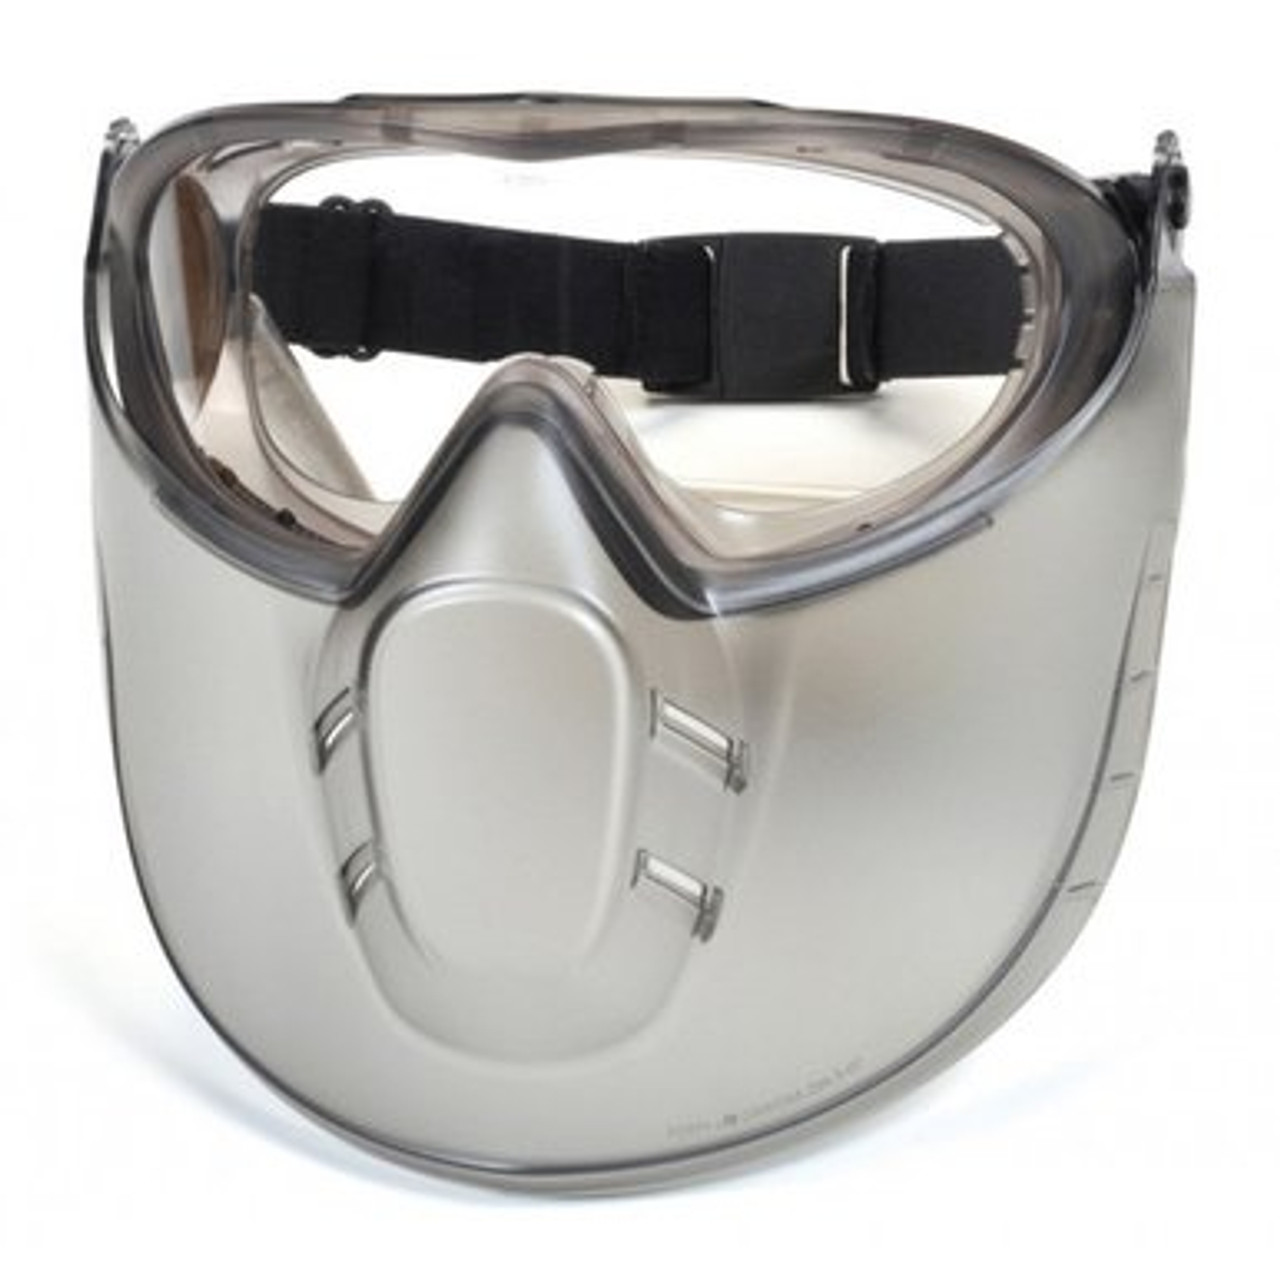 Pyramex Capstone Combination Goggles and Face Shield